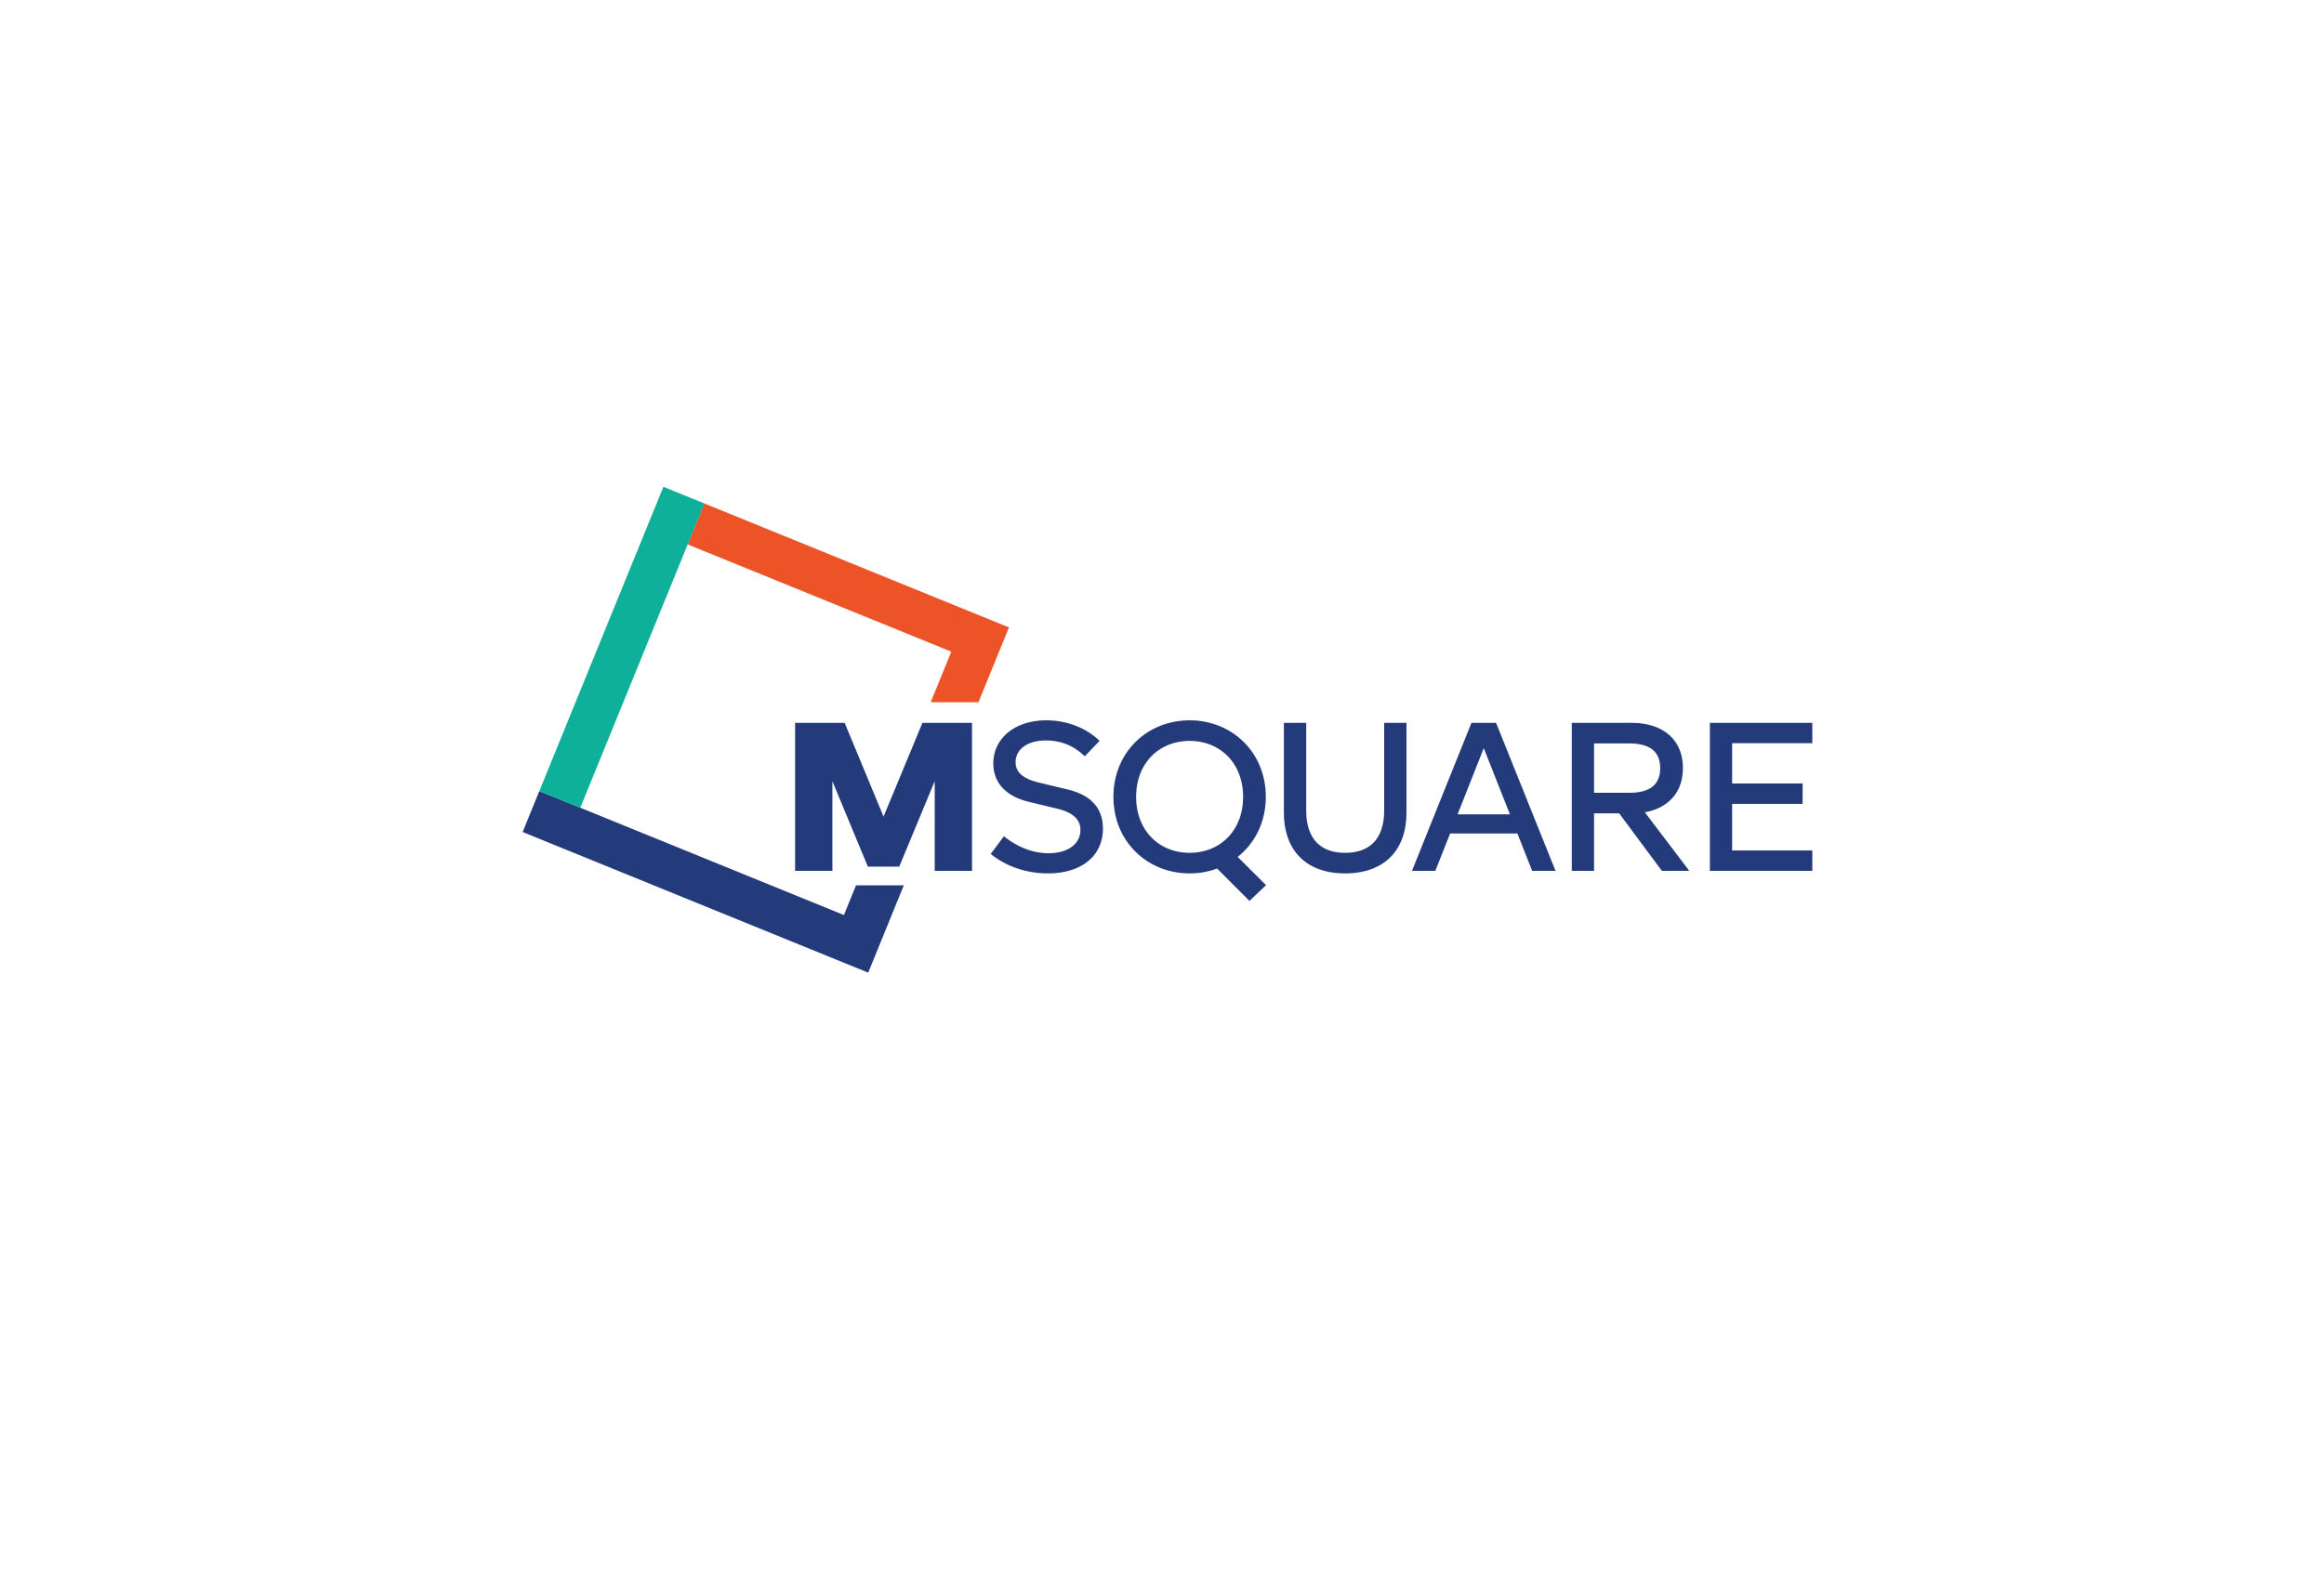 M Square graphic design logo hero